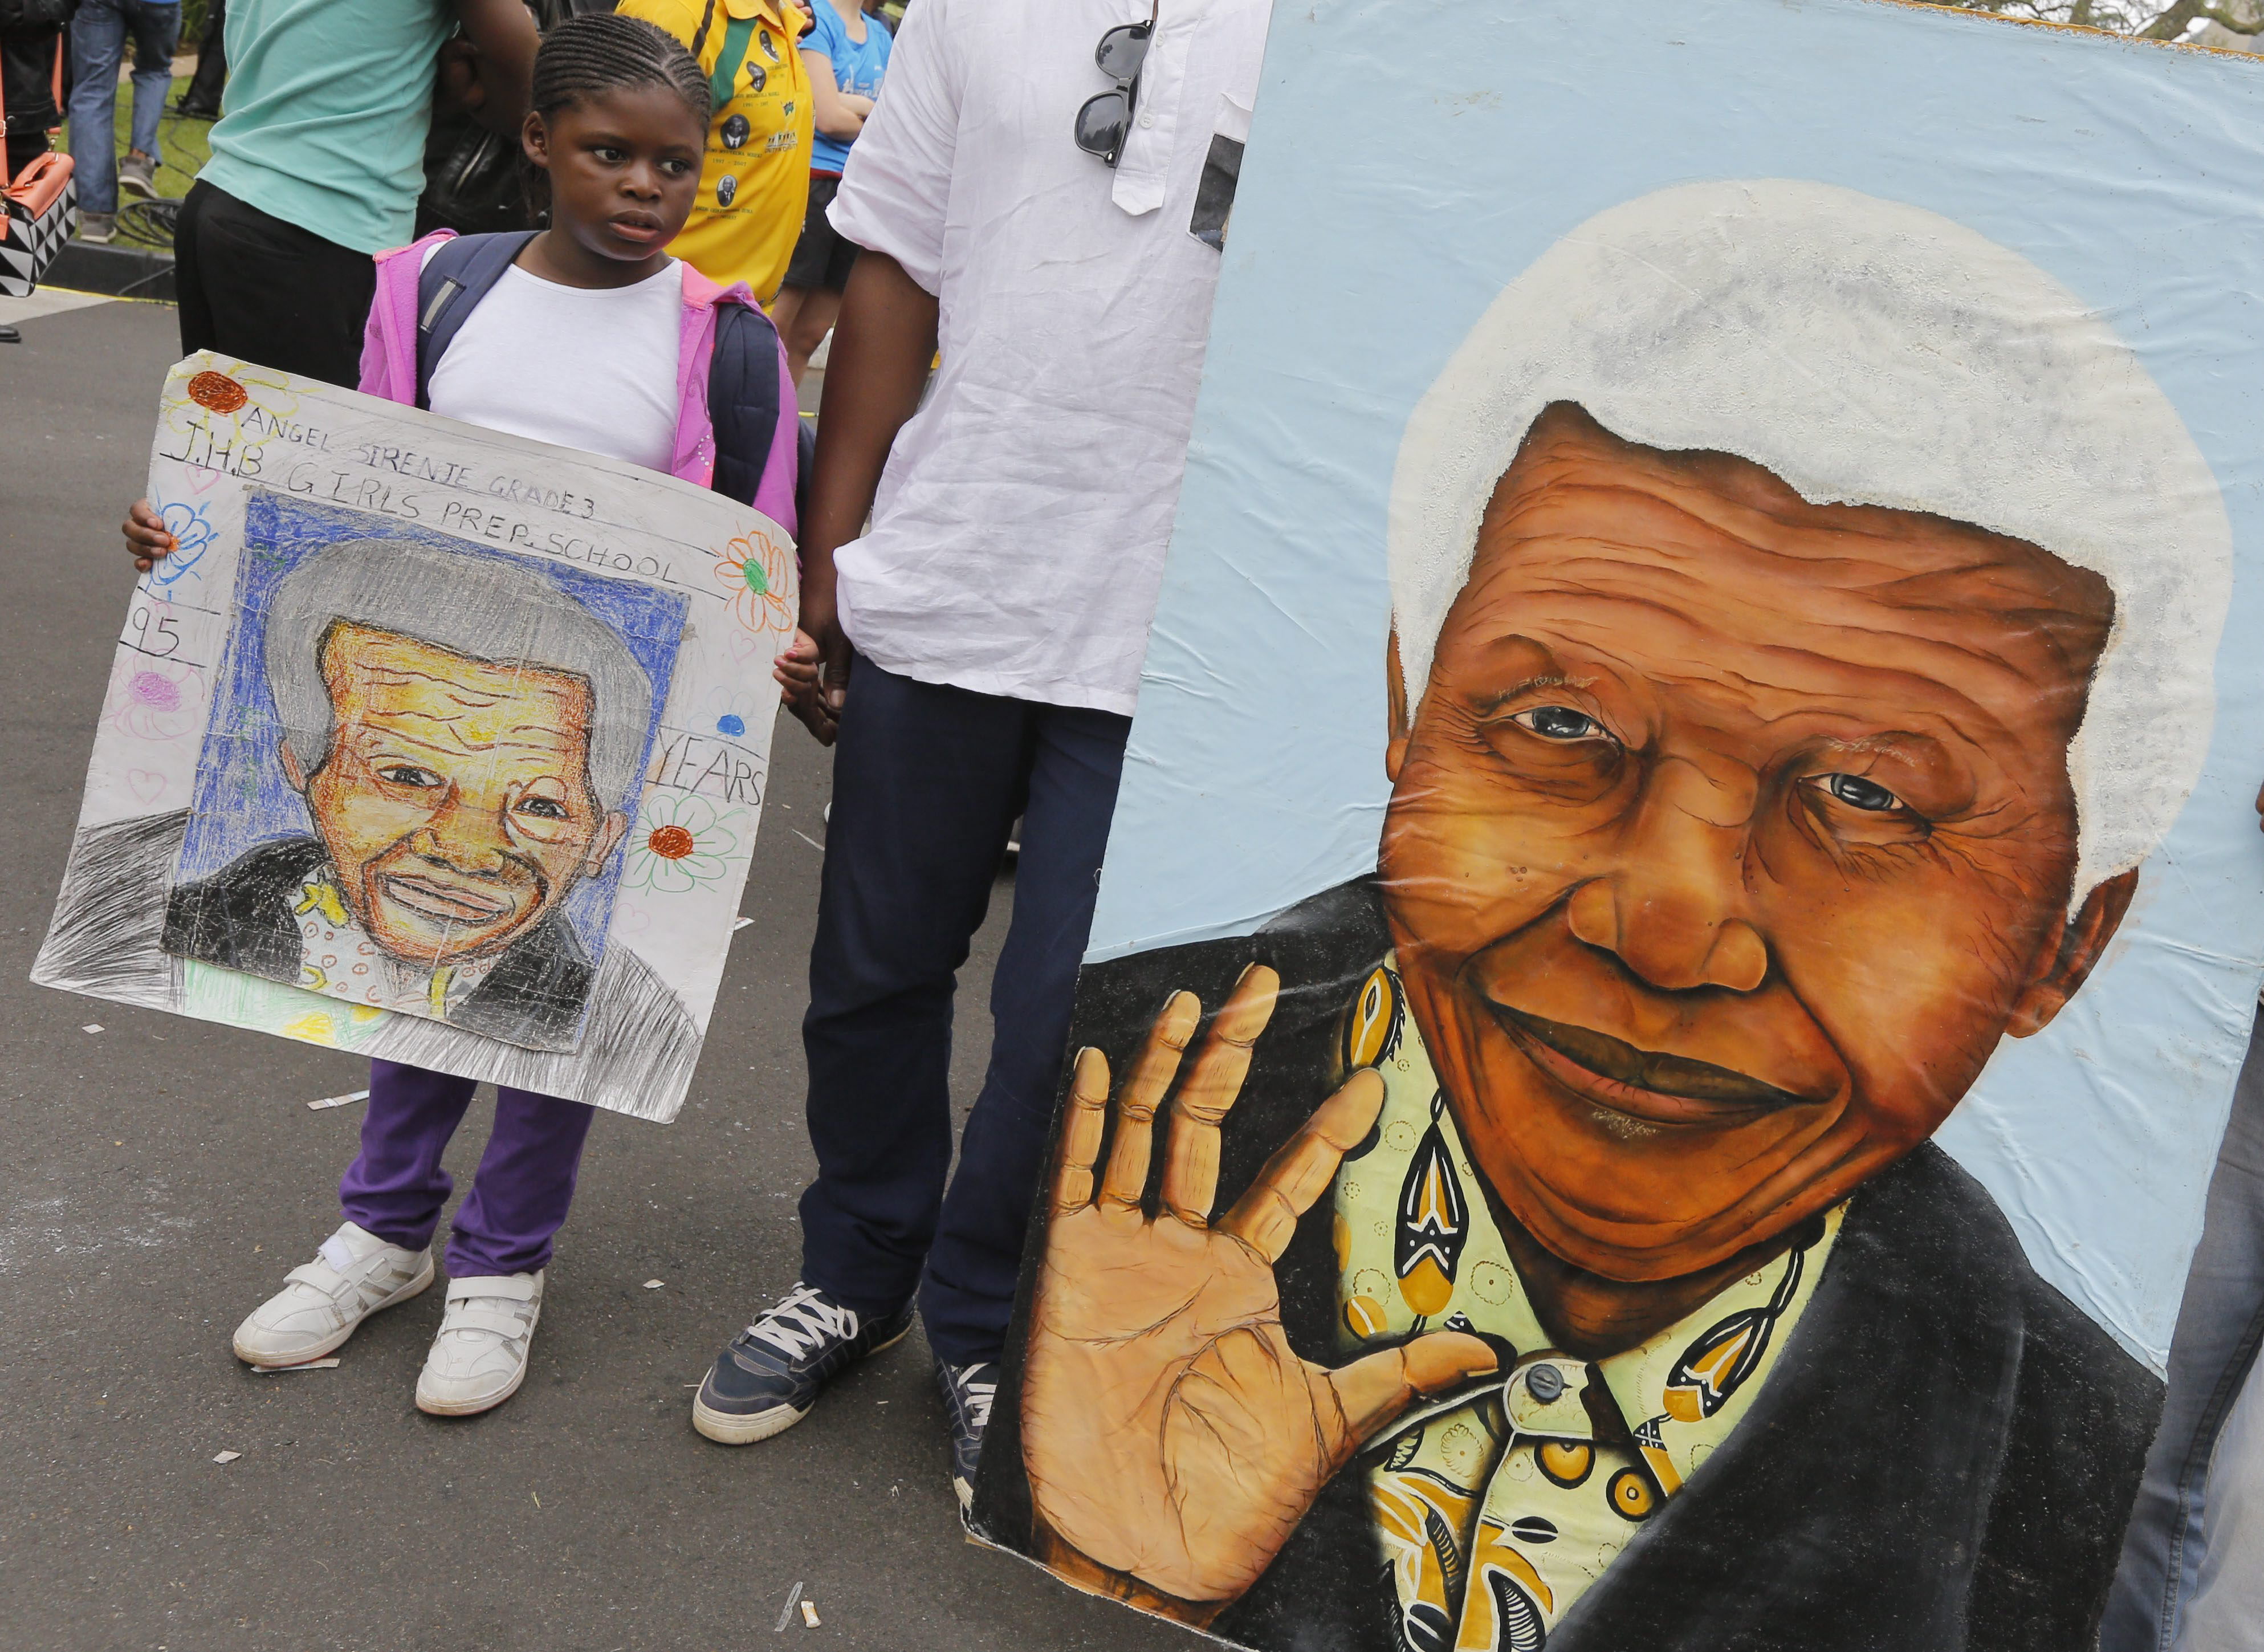 John Carlin cree que en tiempos de crisis acaba surgiendo una figura como Mandela